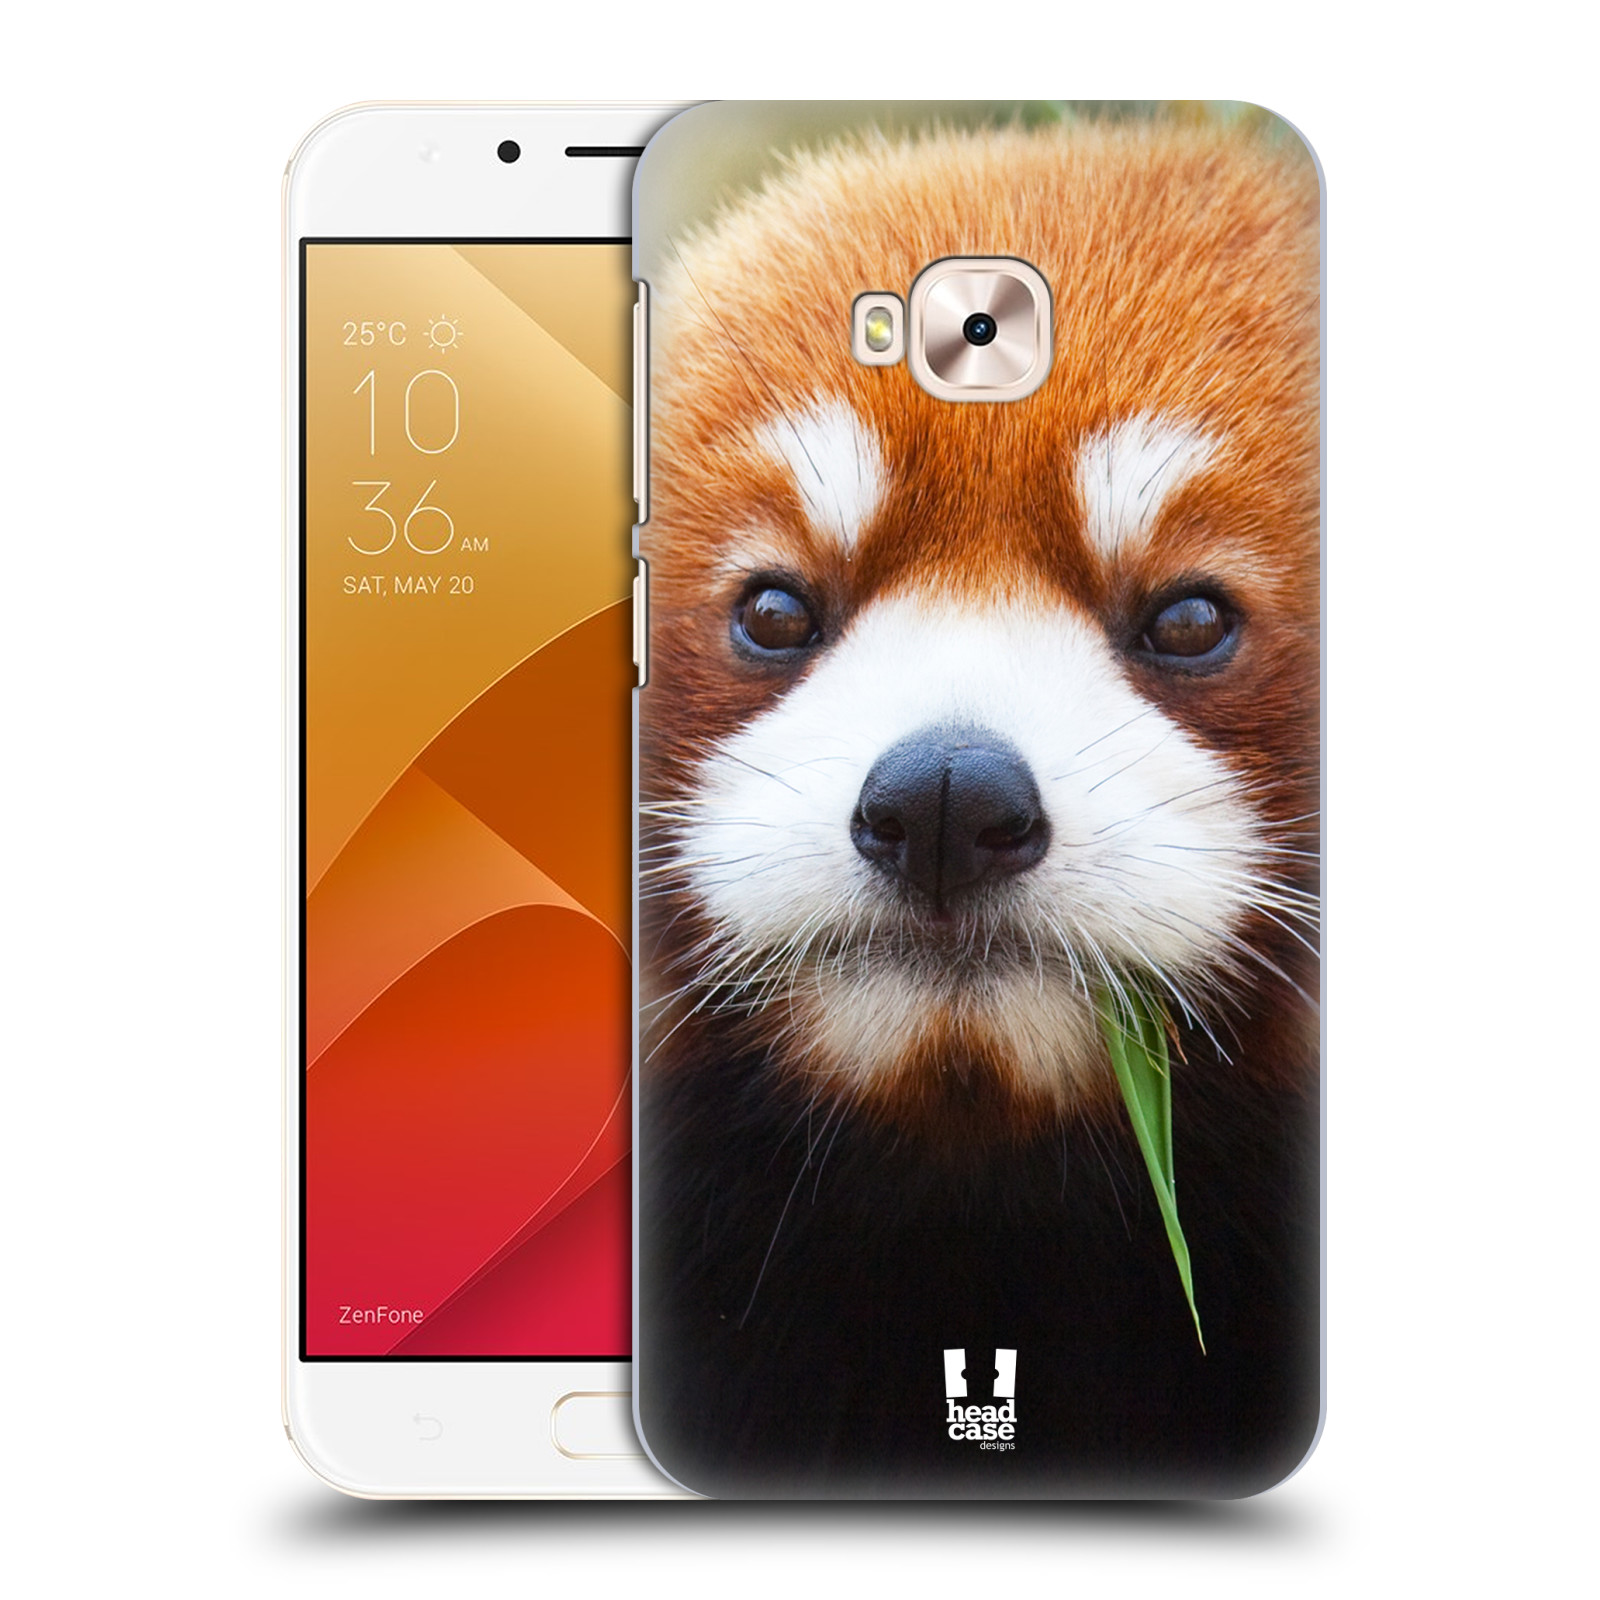 HEAD CASE plastový obal na mobil Asus Zenfone 4 Selfie Pro ZD552KL vzor Divočina, Divoký život a zvířata foto PANDA HNĚDÁ